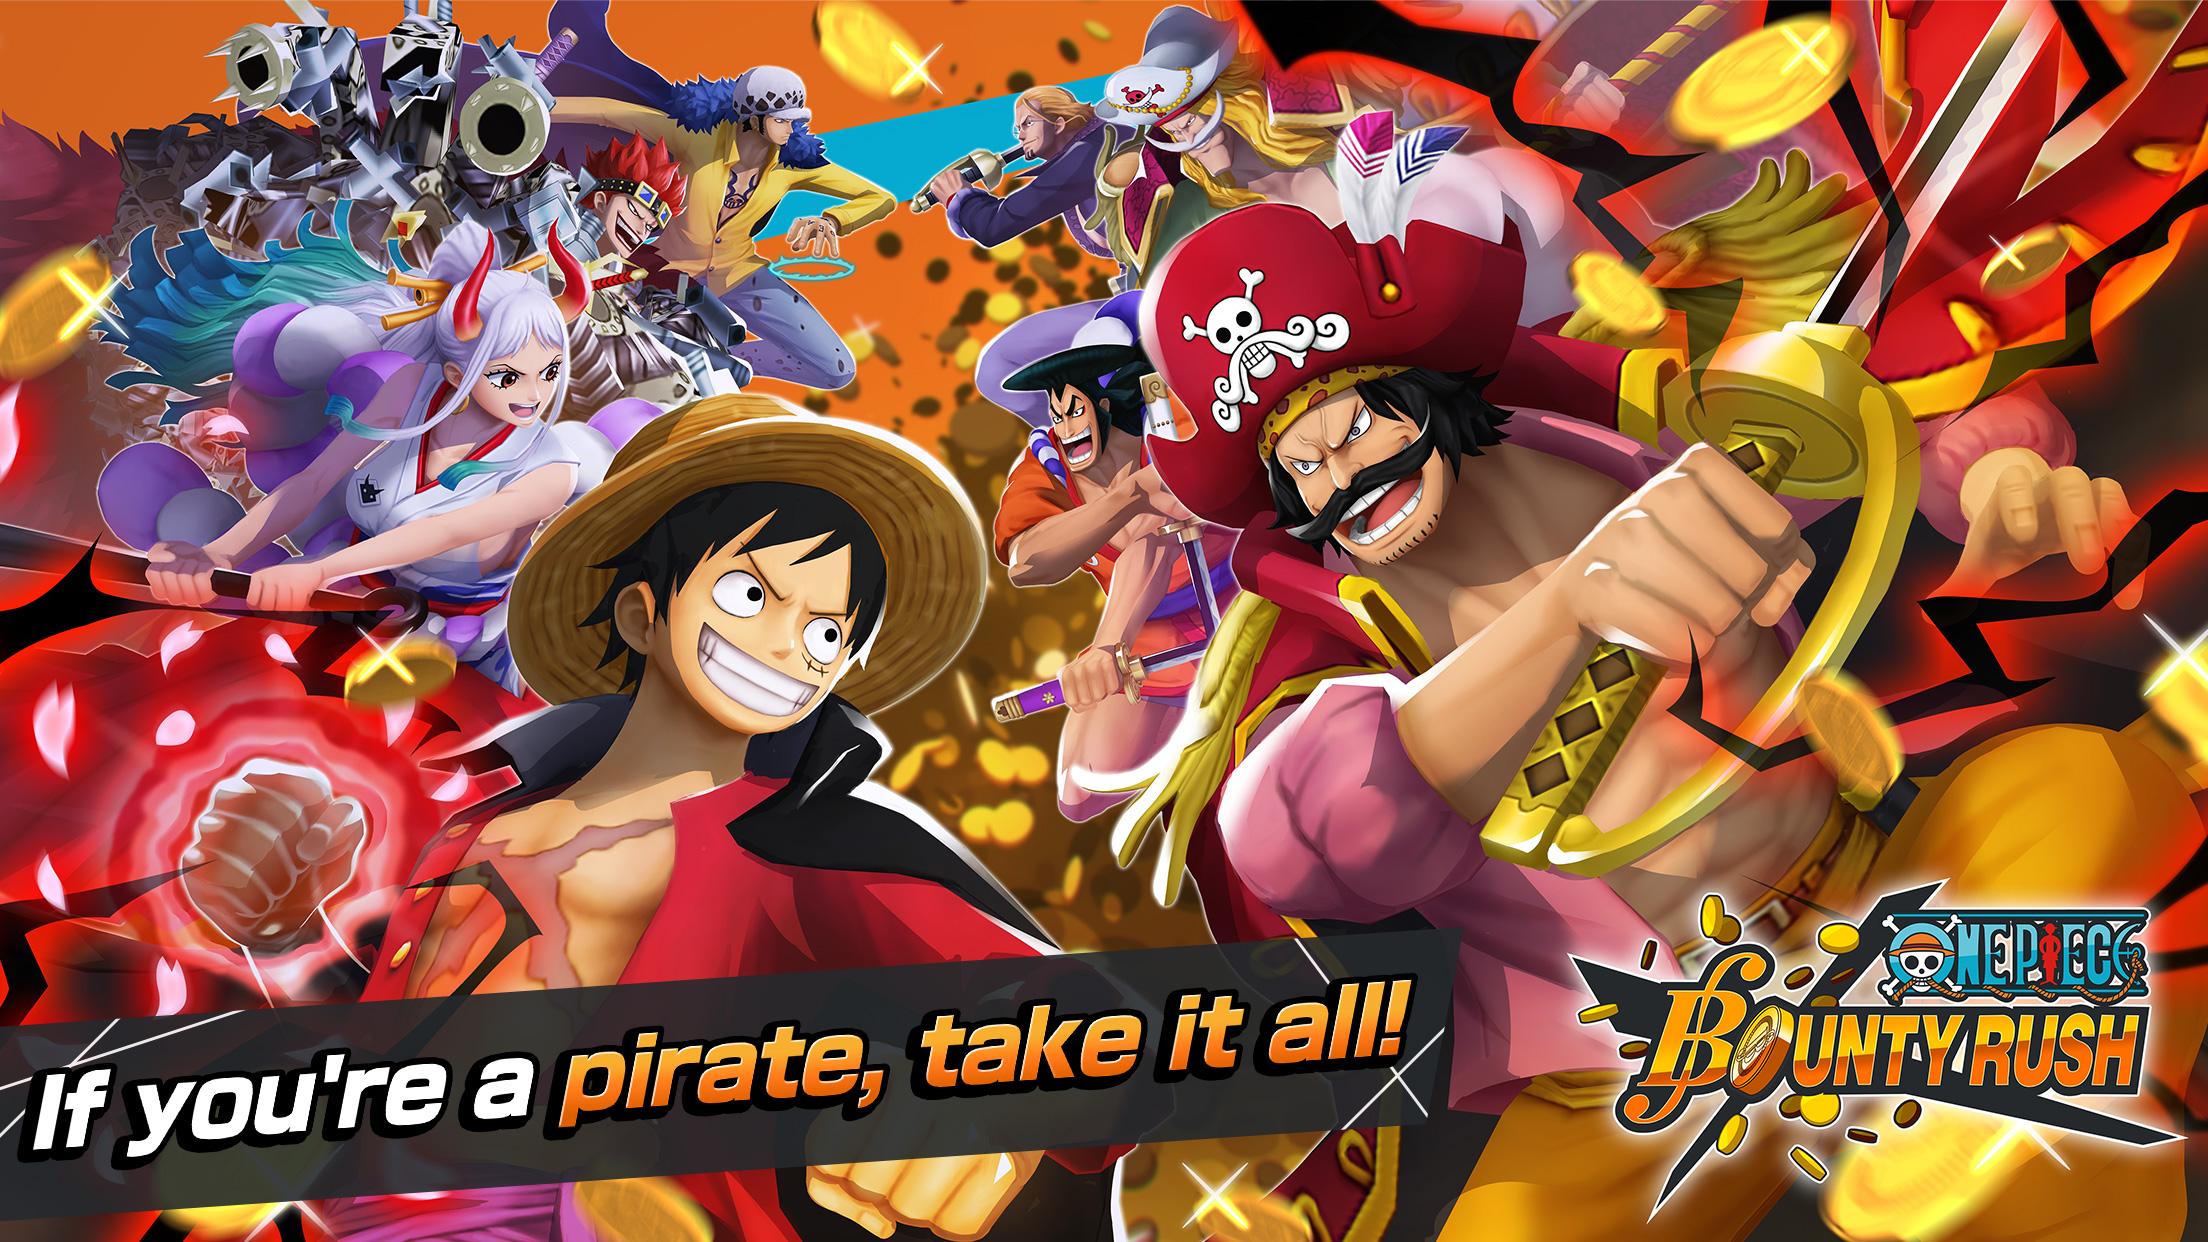 Chơi game One Piece Bounty Rush trên PC giờ đây trở nên dễ dàng hơn bao giờ hết. Bạn sẽ được tham gia vào các trận đấu gay cấn, tải về và chơi ngay trên máy tính của mình. Khám phá thế giới One Piece ngay bây giờ!